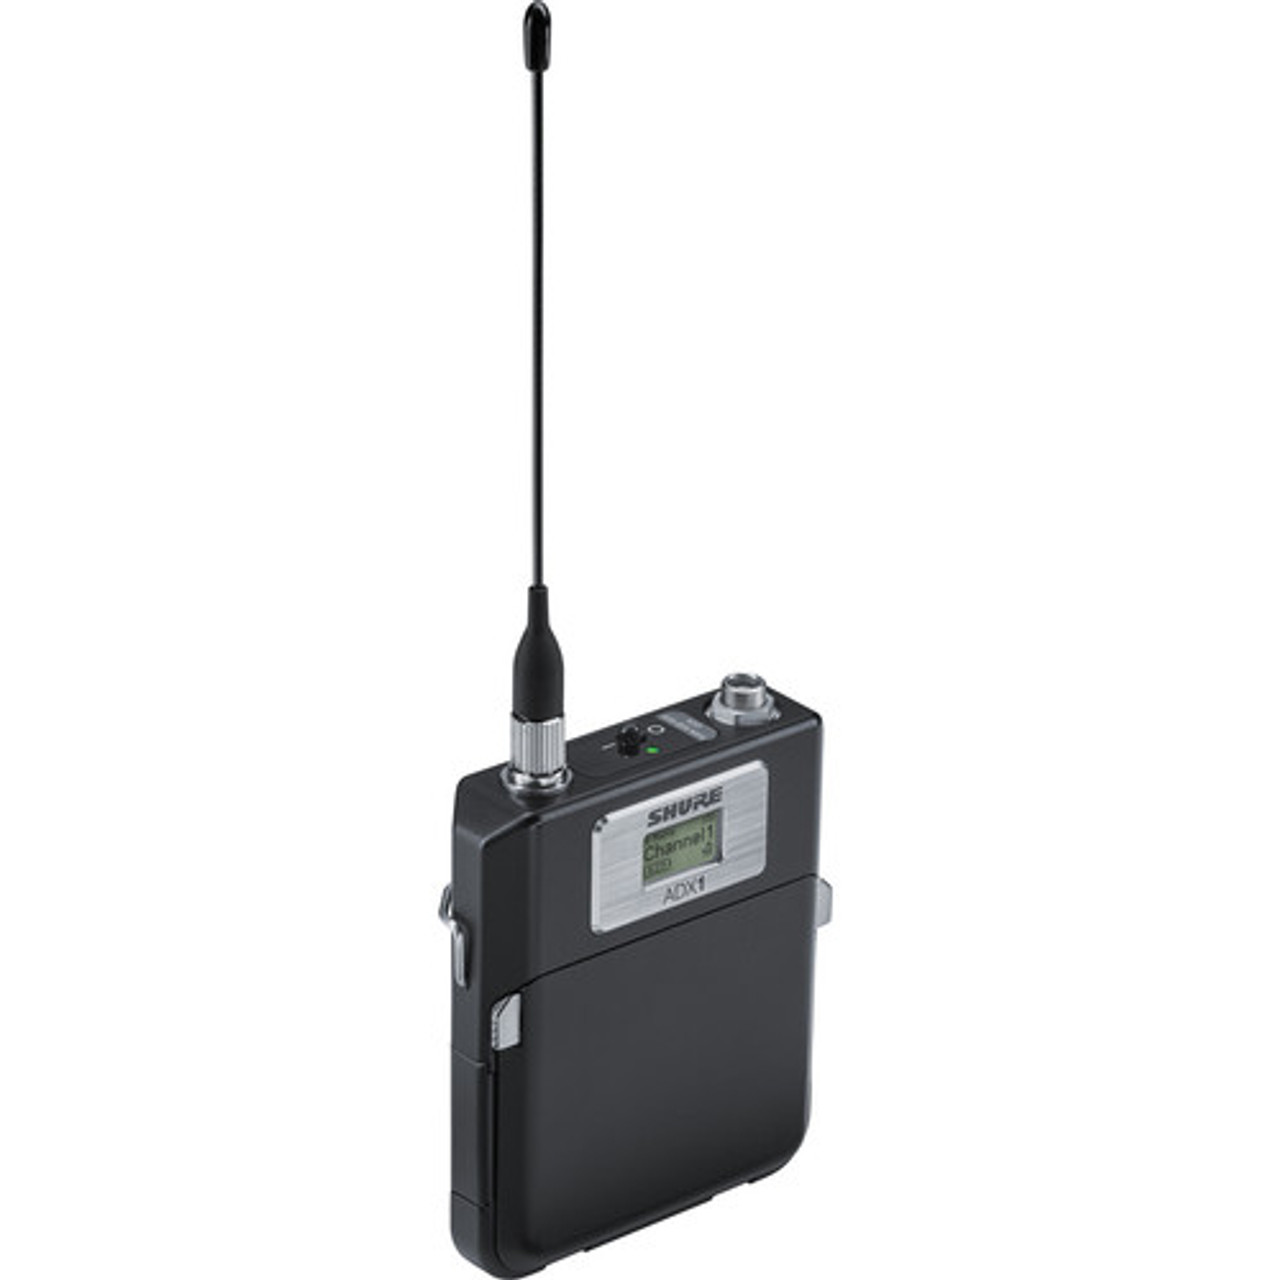 Shure ADX1LEMO3=-X55 Digital Wireless Bodypack Transmitter with LEMO3 (X55: 941 to 960 MHz) (ADX1LEMO3=-X55)